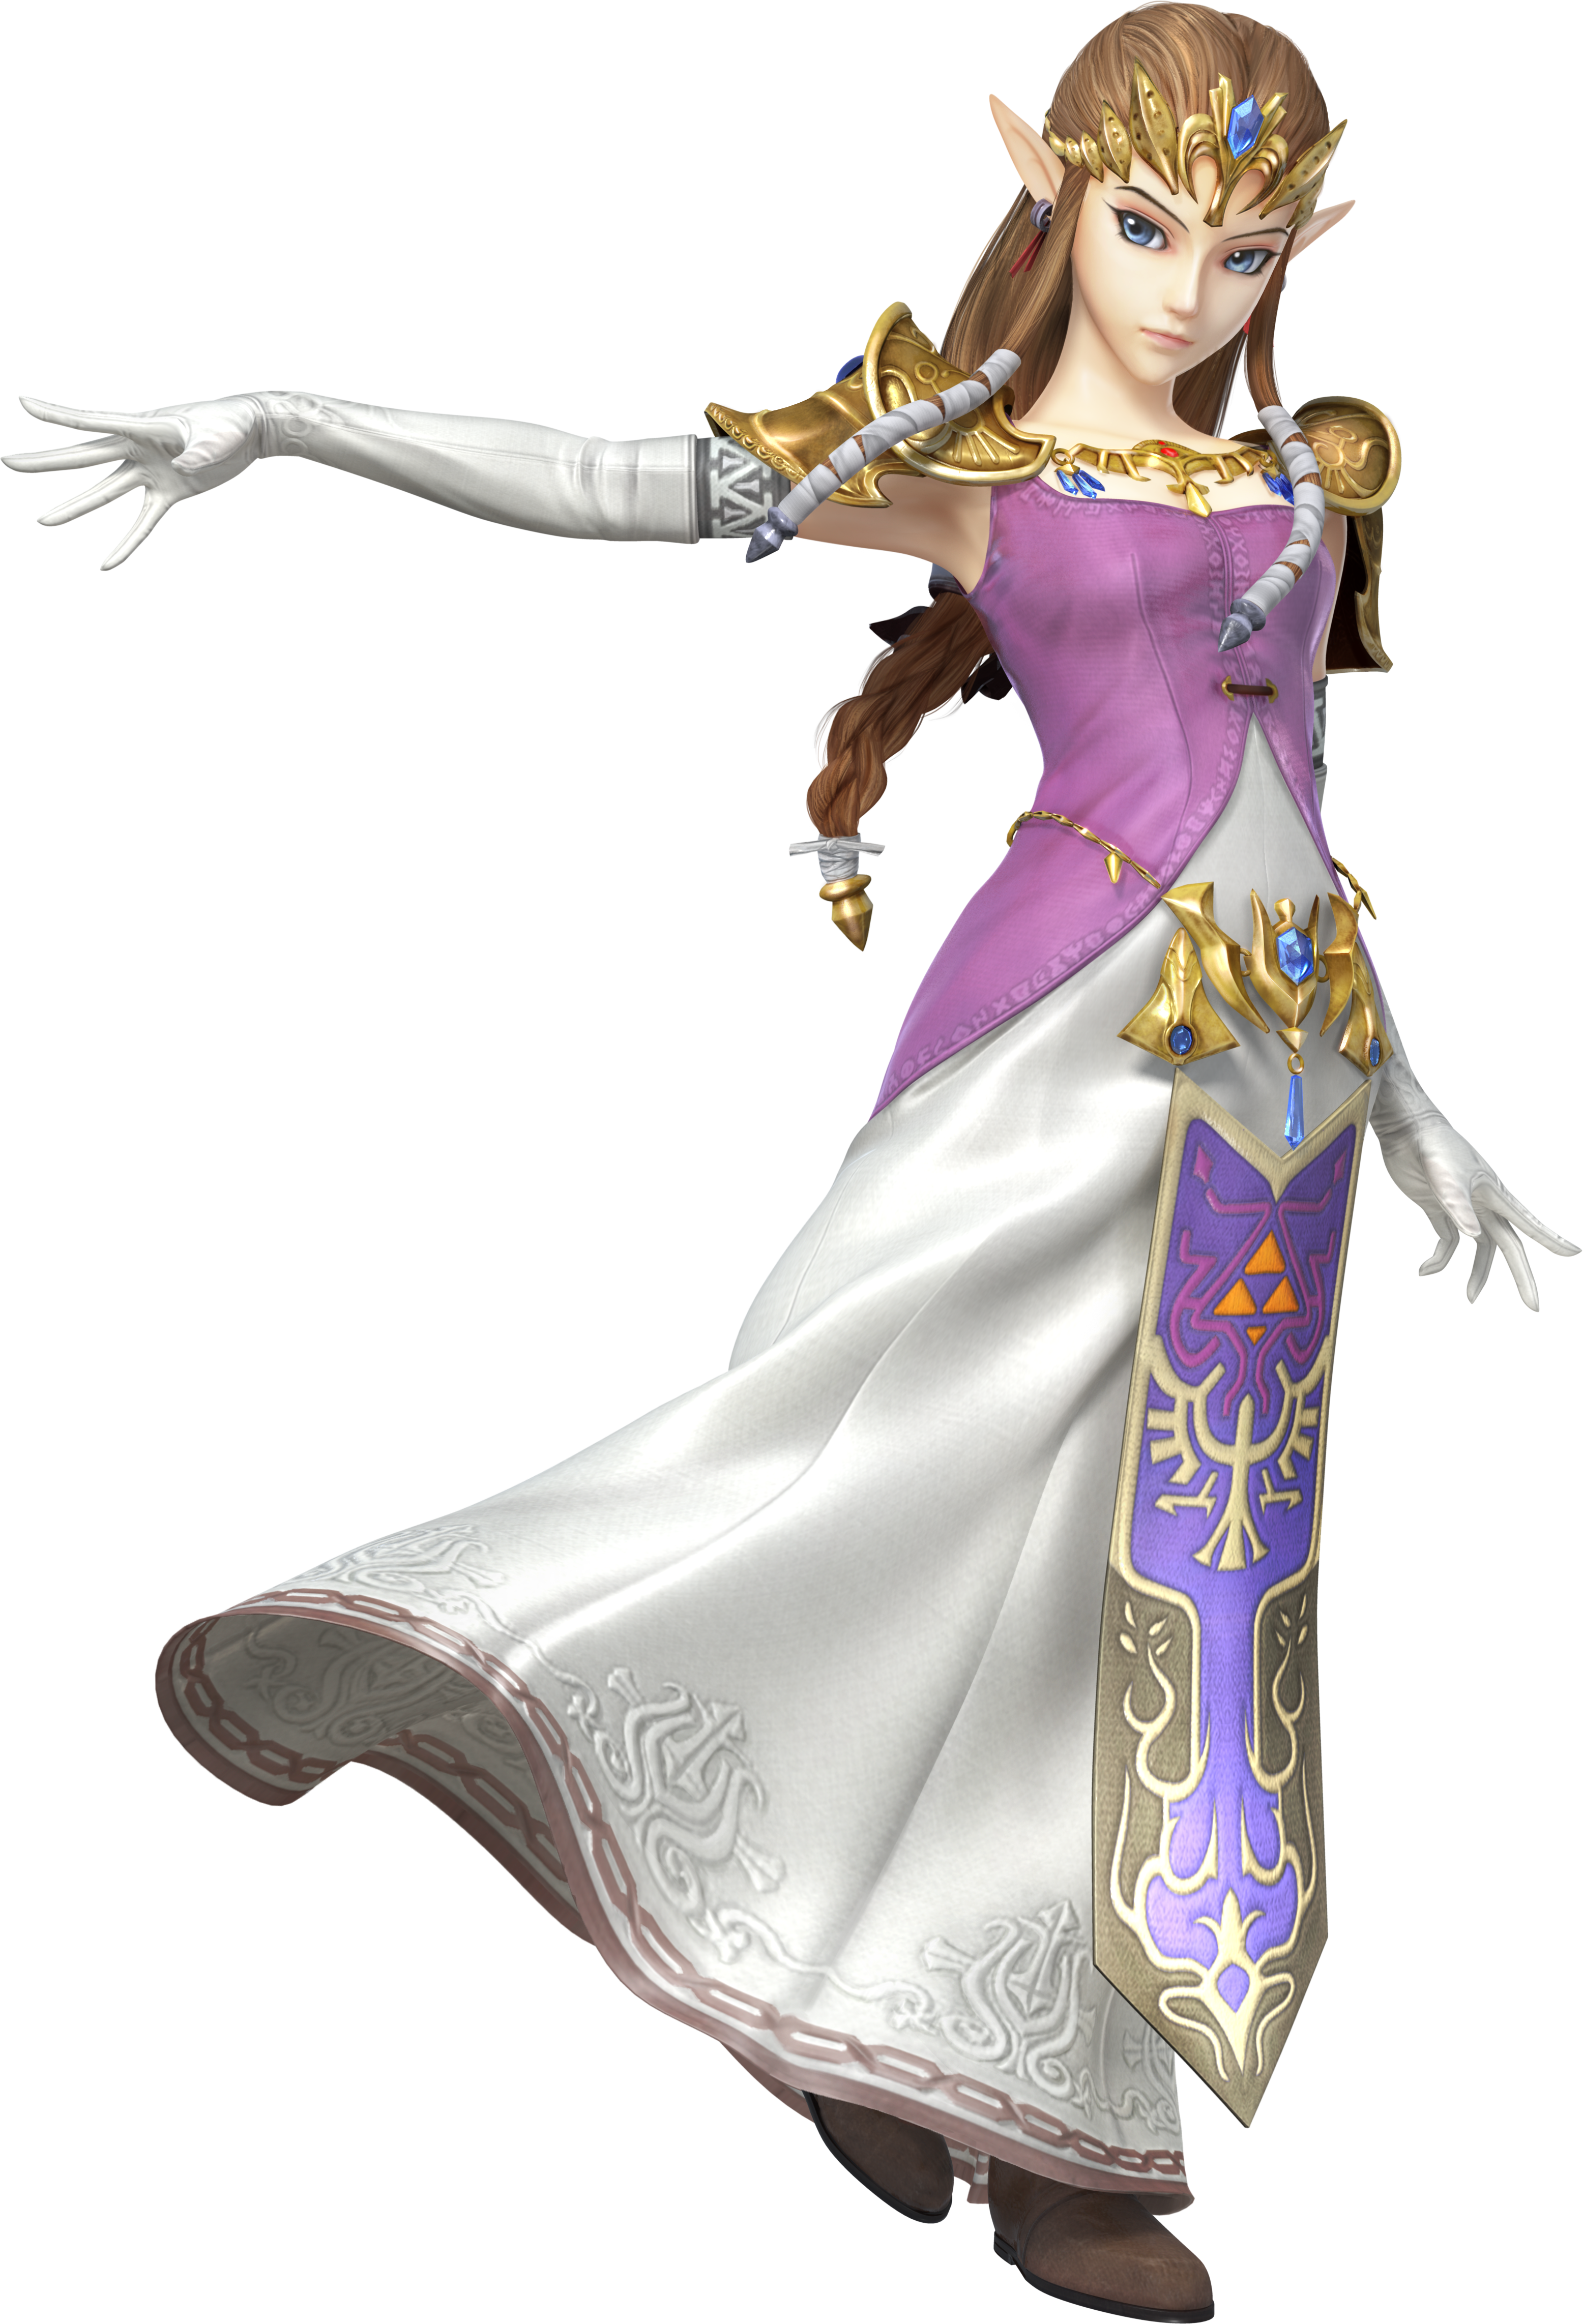 Princesa Zelda – Wikipédia, a enciclopédia livre